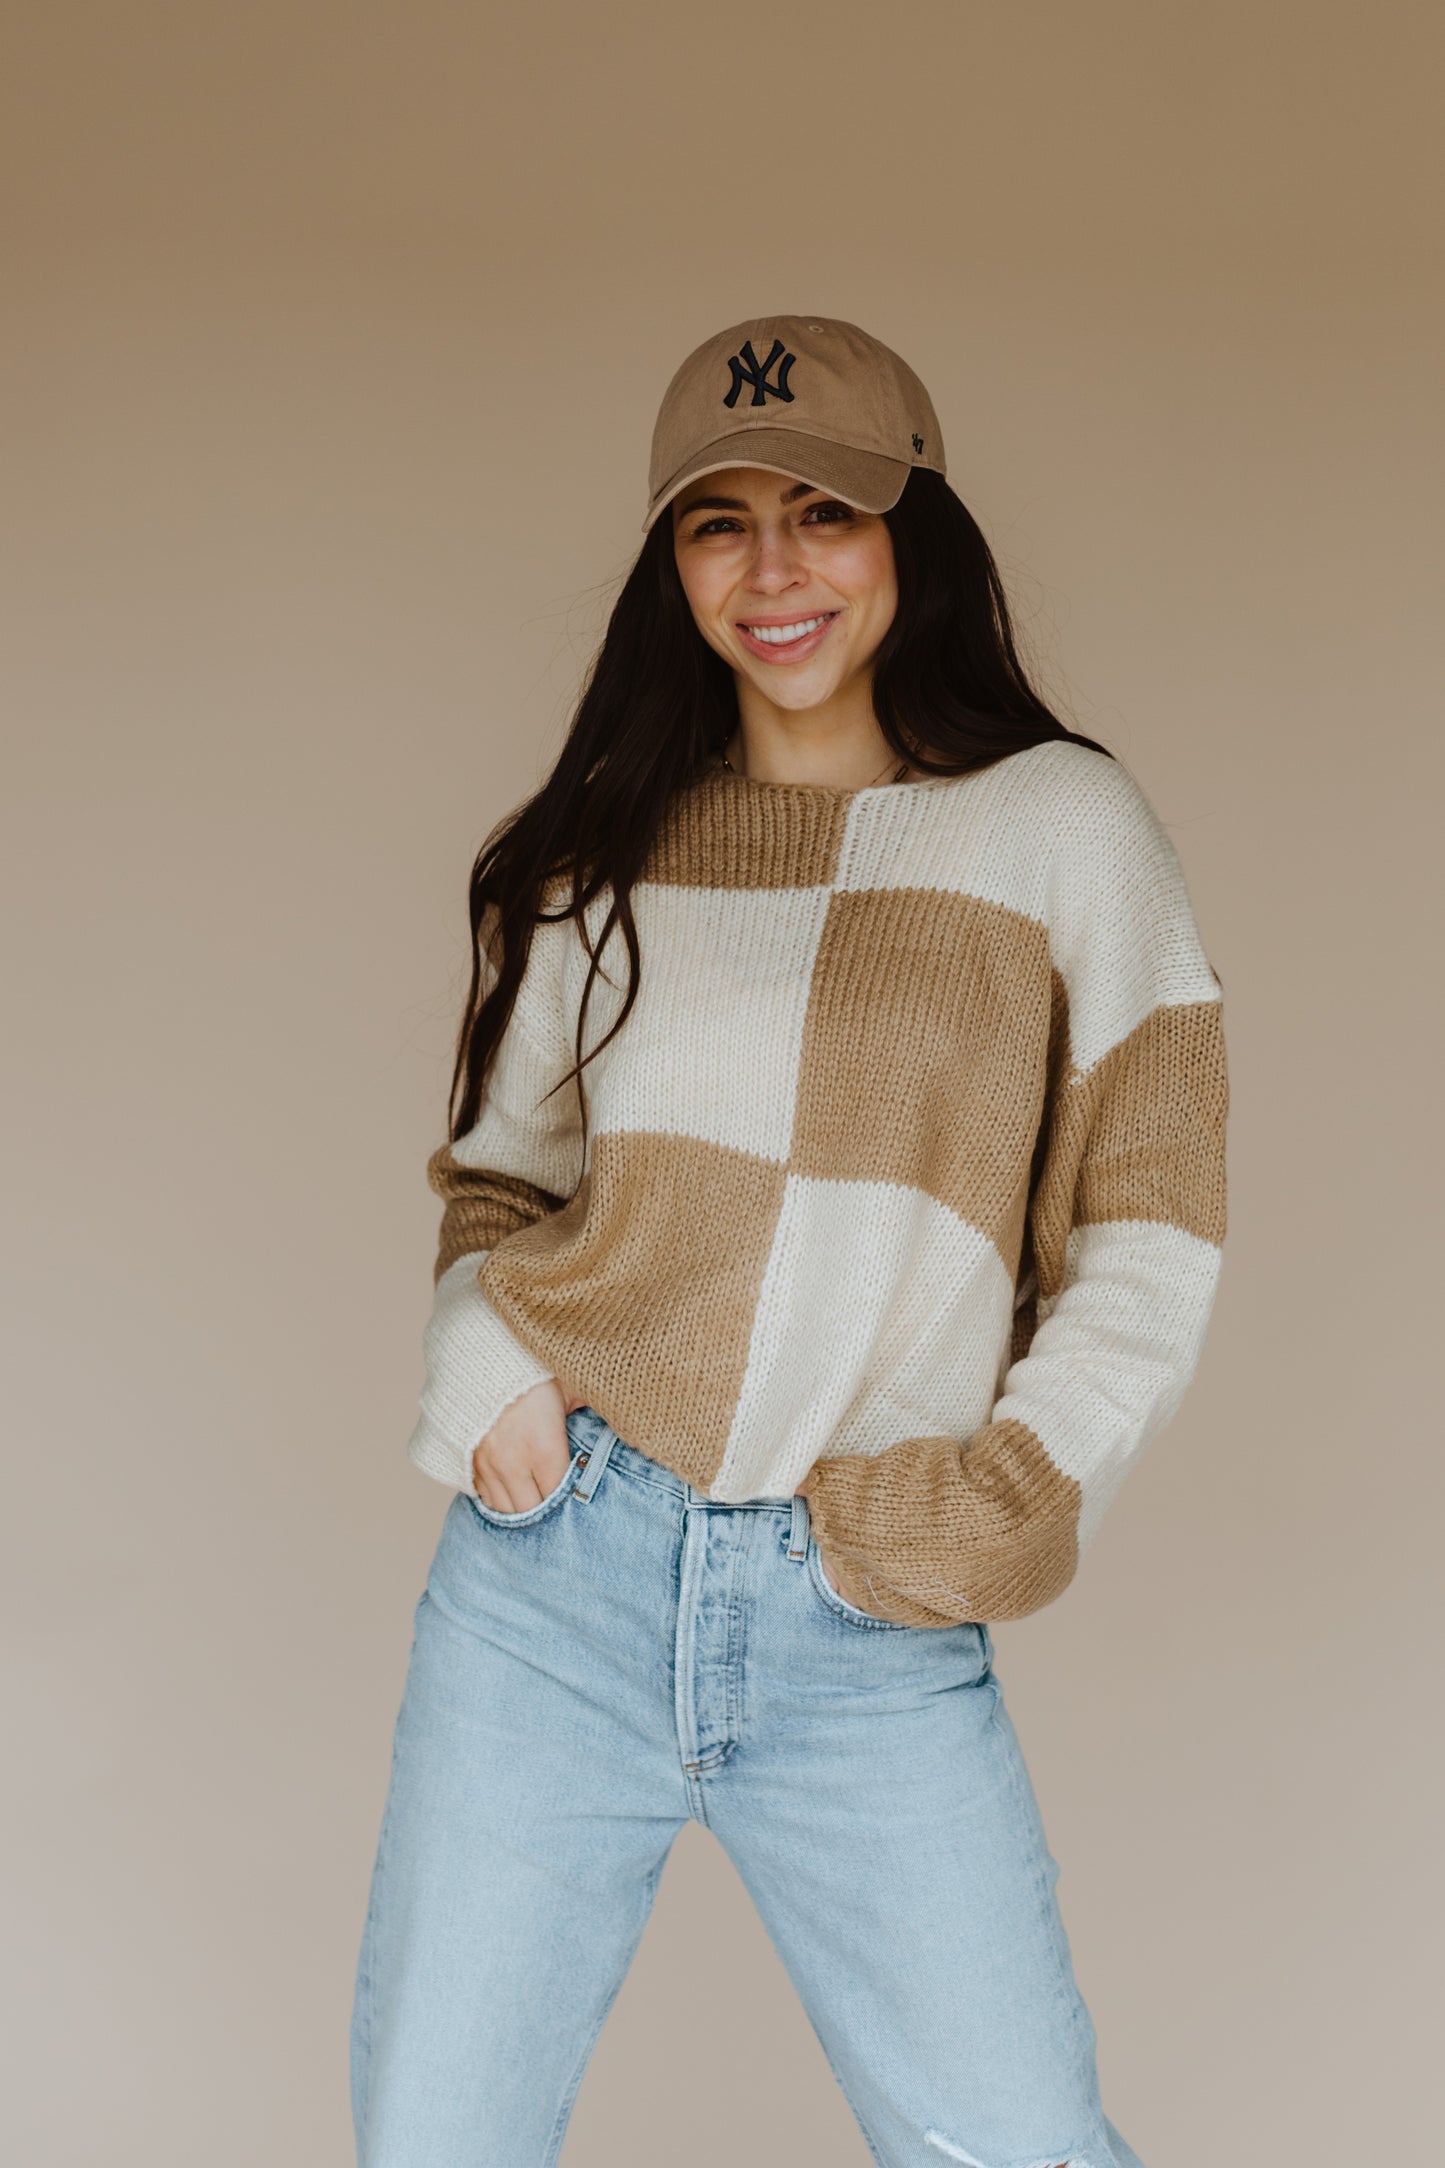 Check Mate Sweater/Sale